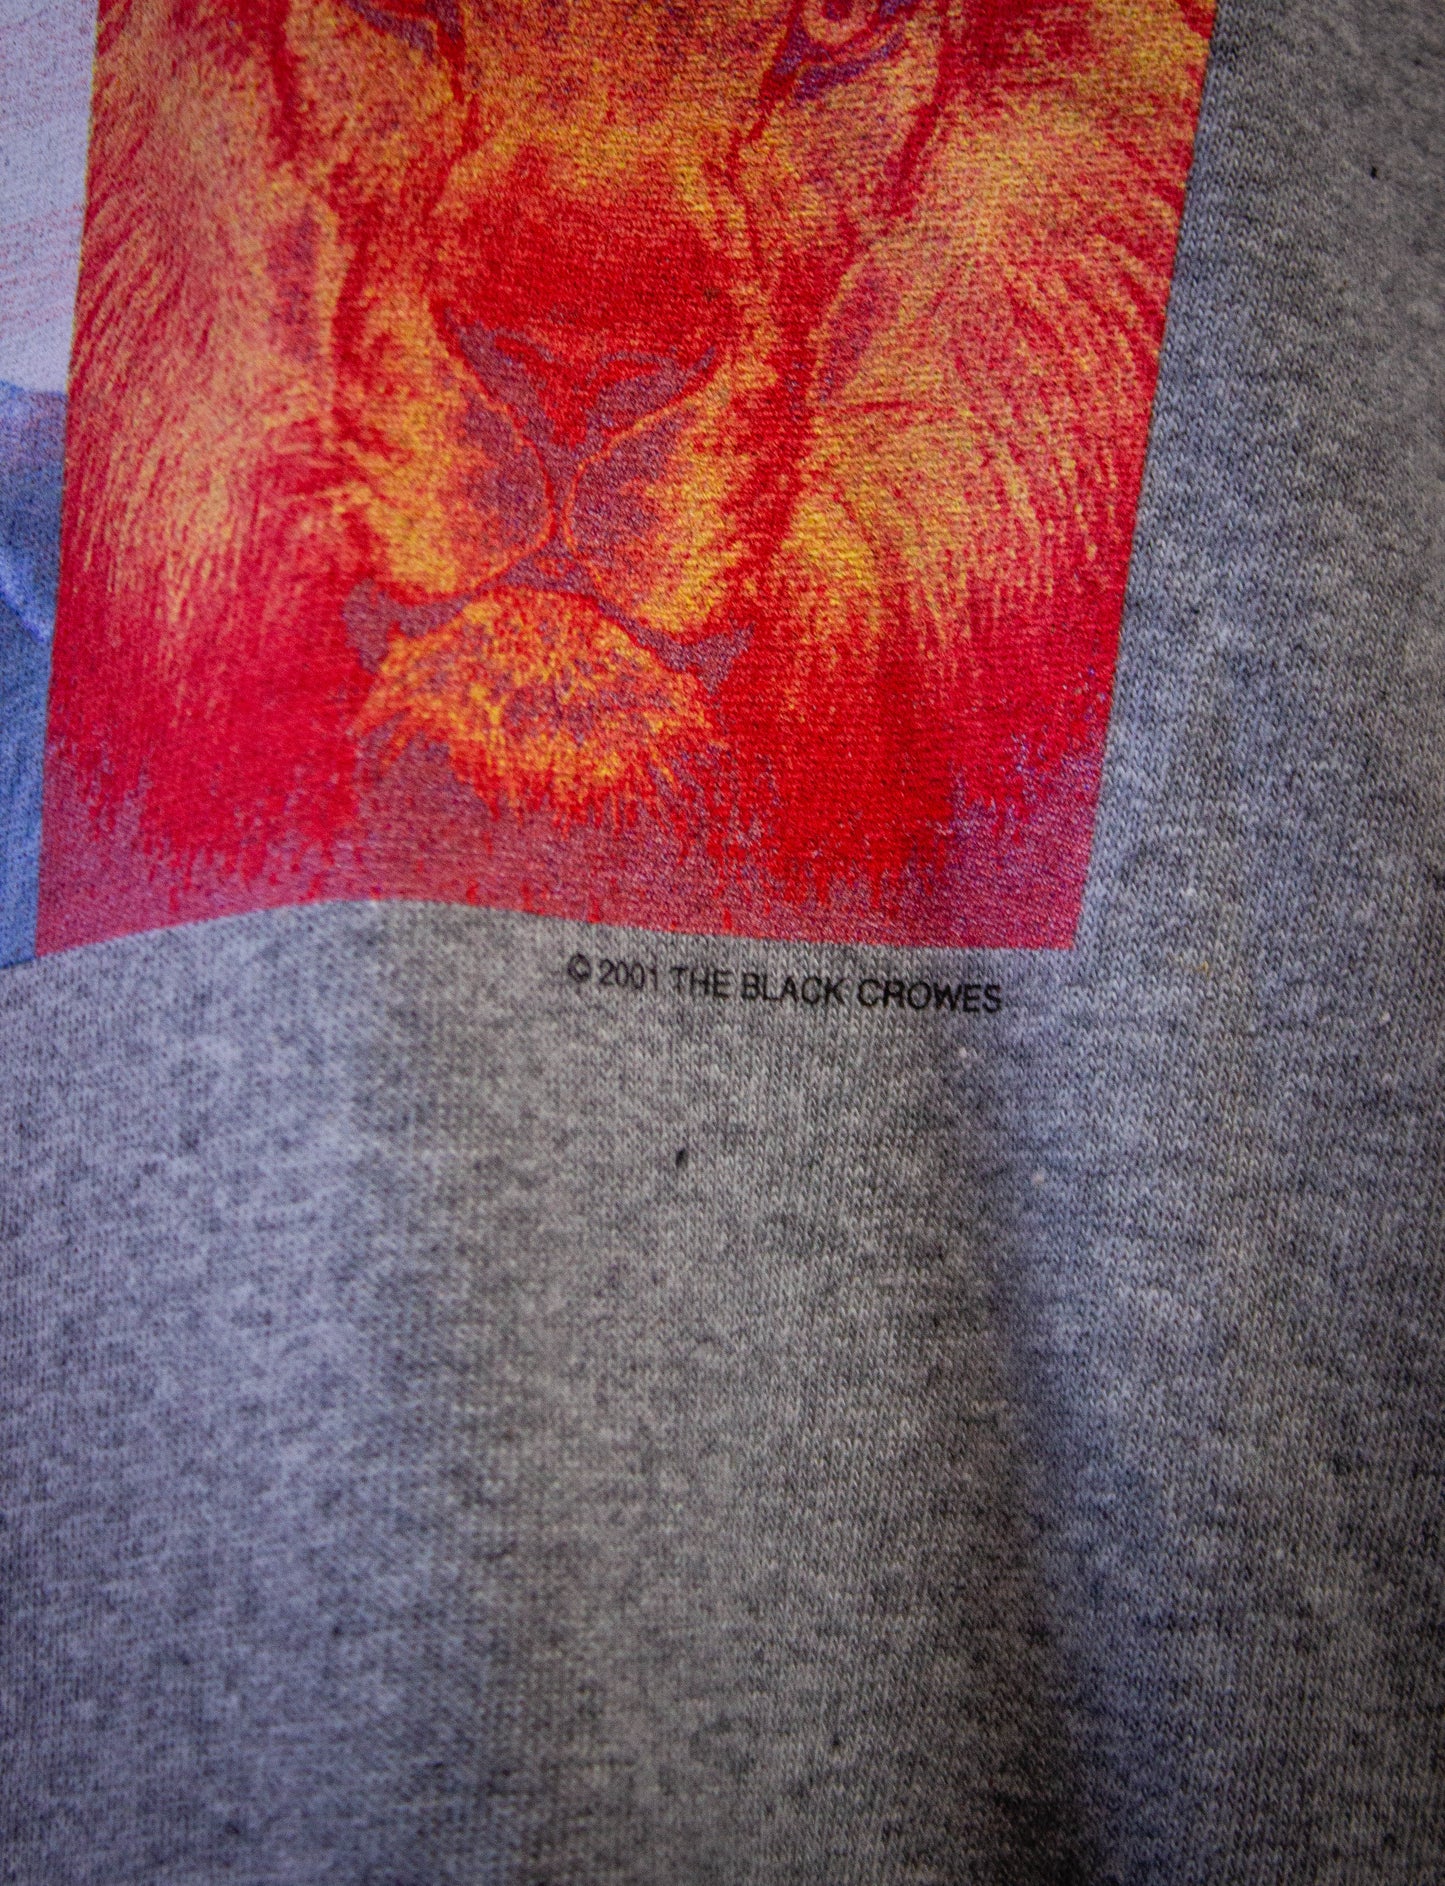 Vintage Black Crowes Lions Concert T Shirt 2001 Gray XL